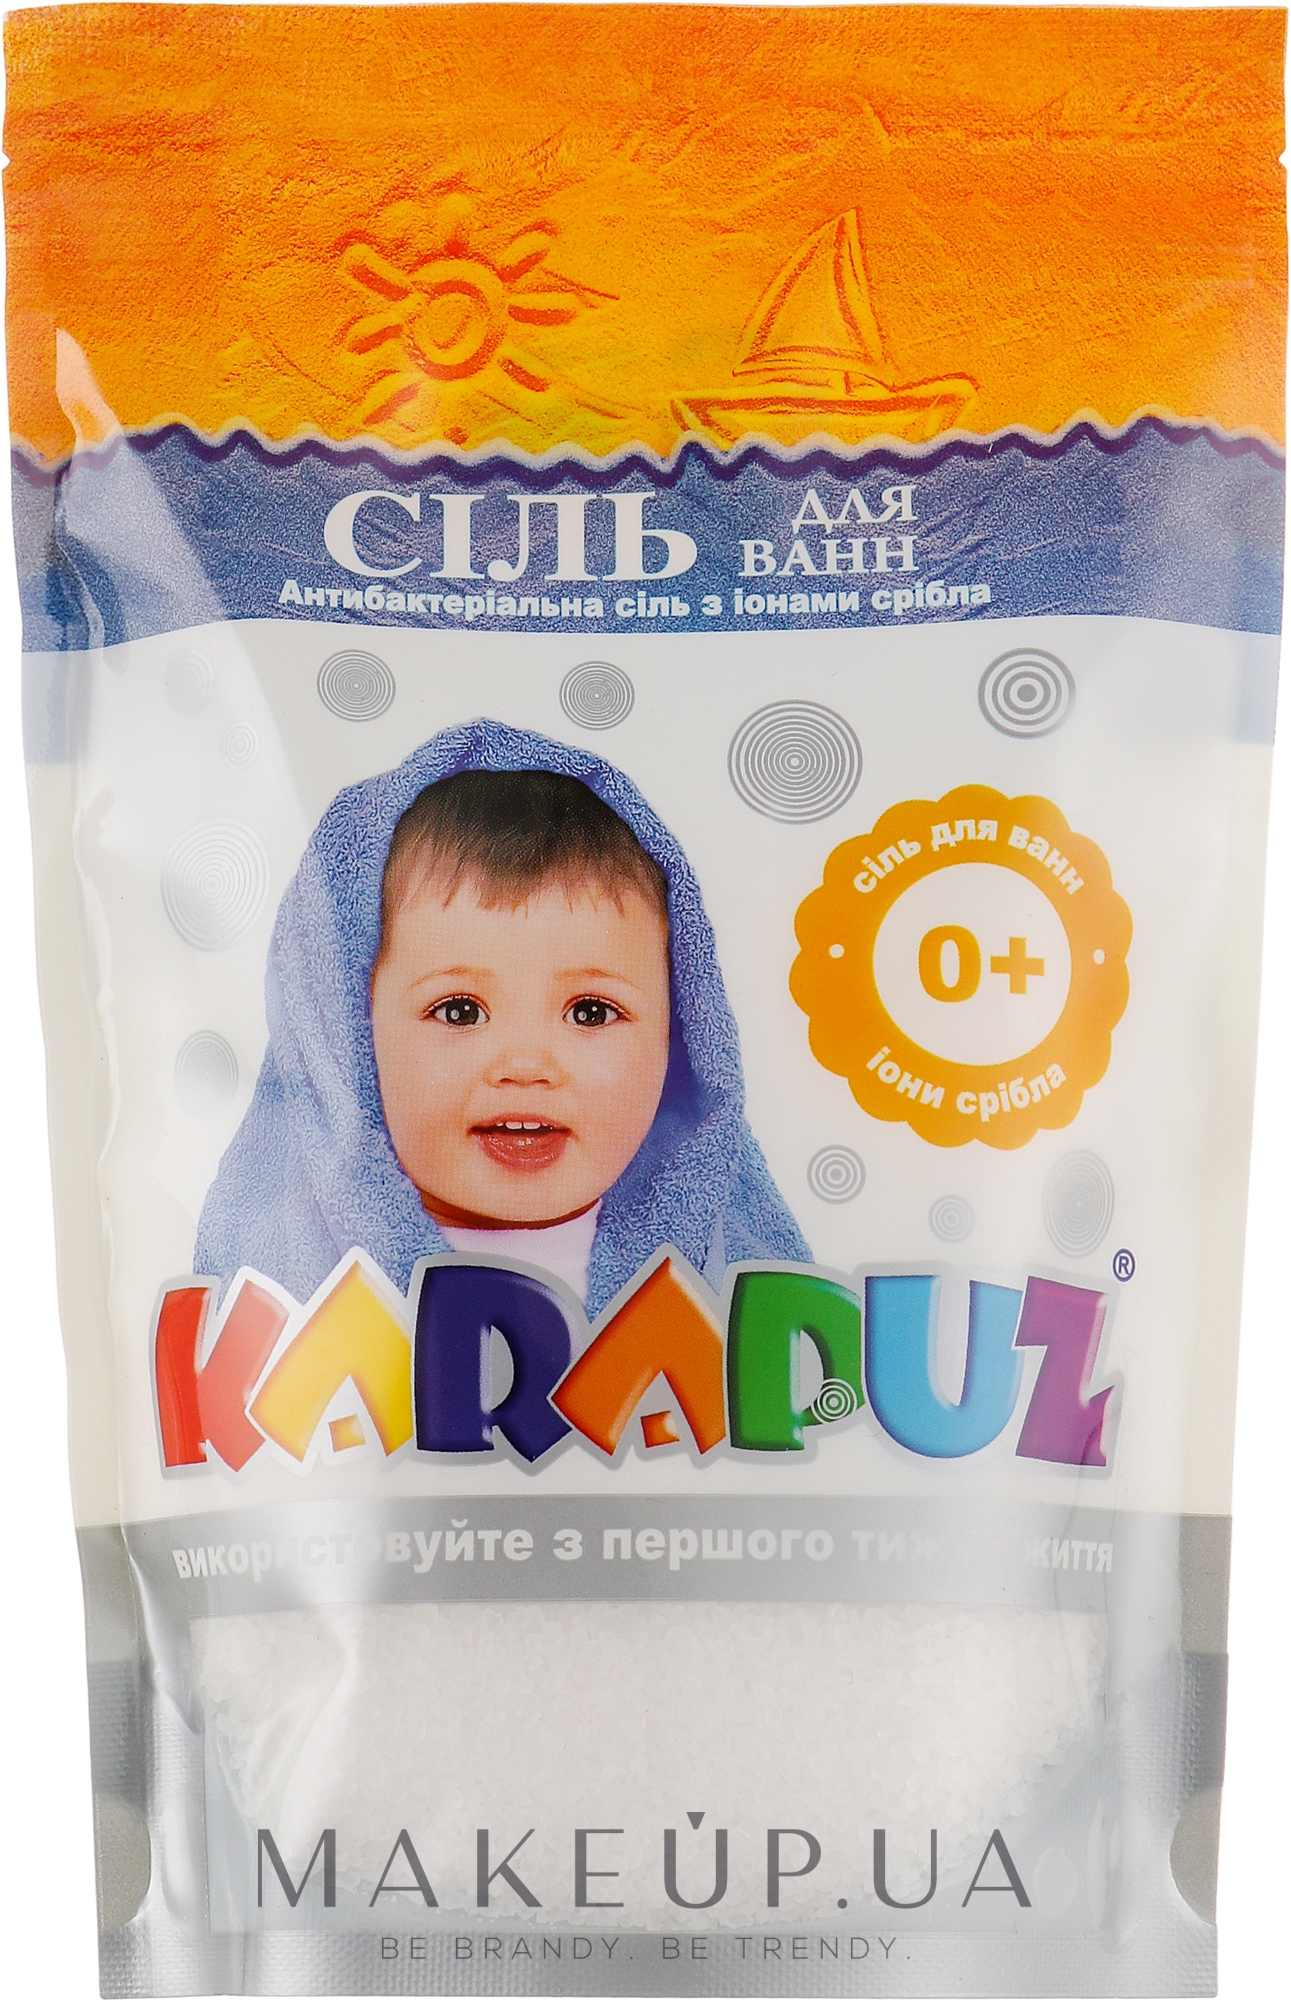 Соль антибактериальная с ионами серебра для купания детей - Карапуз — фото 500g